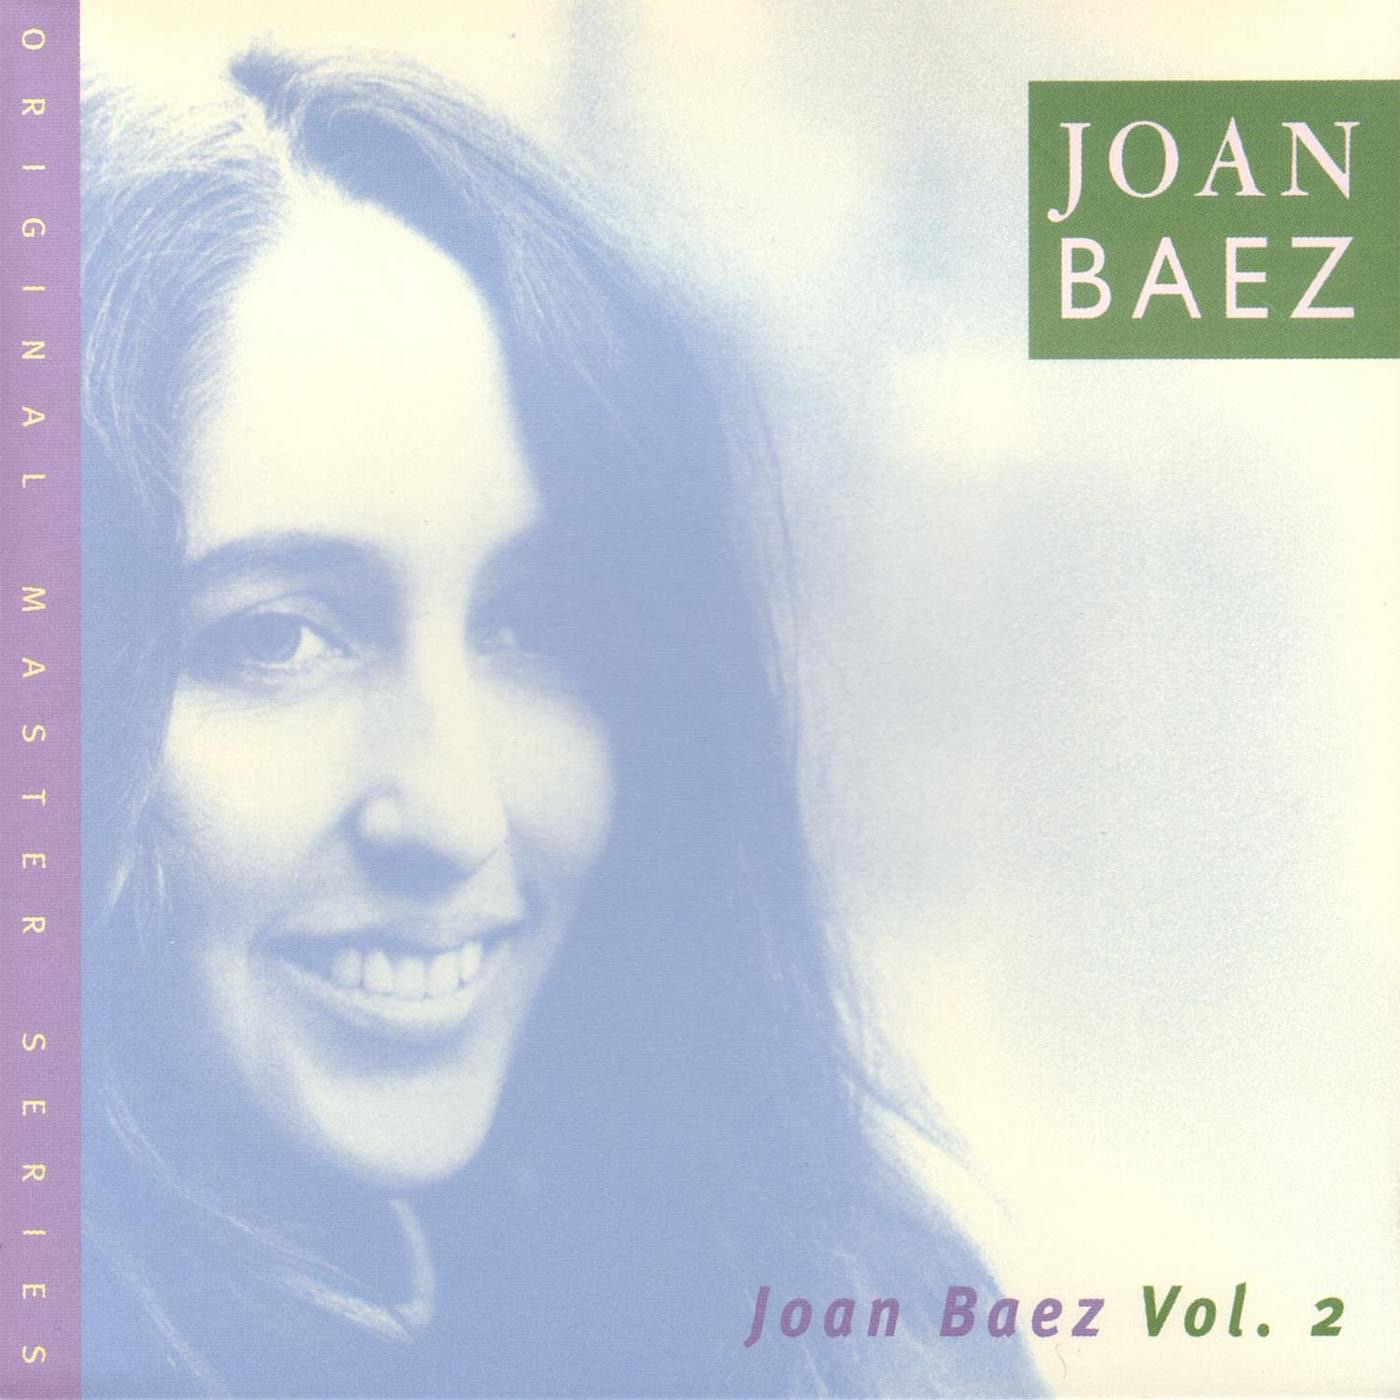 Joan Baez, Vol. Ii by Joan Baez